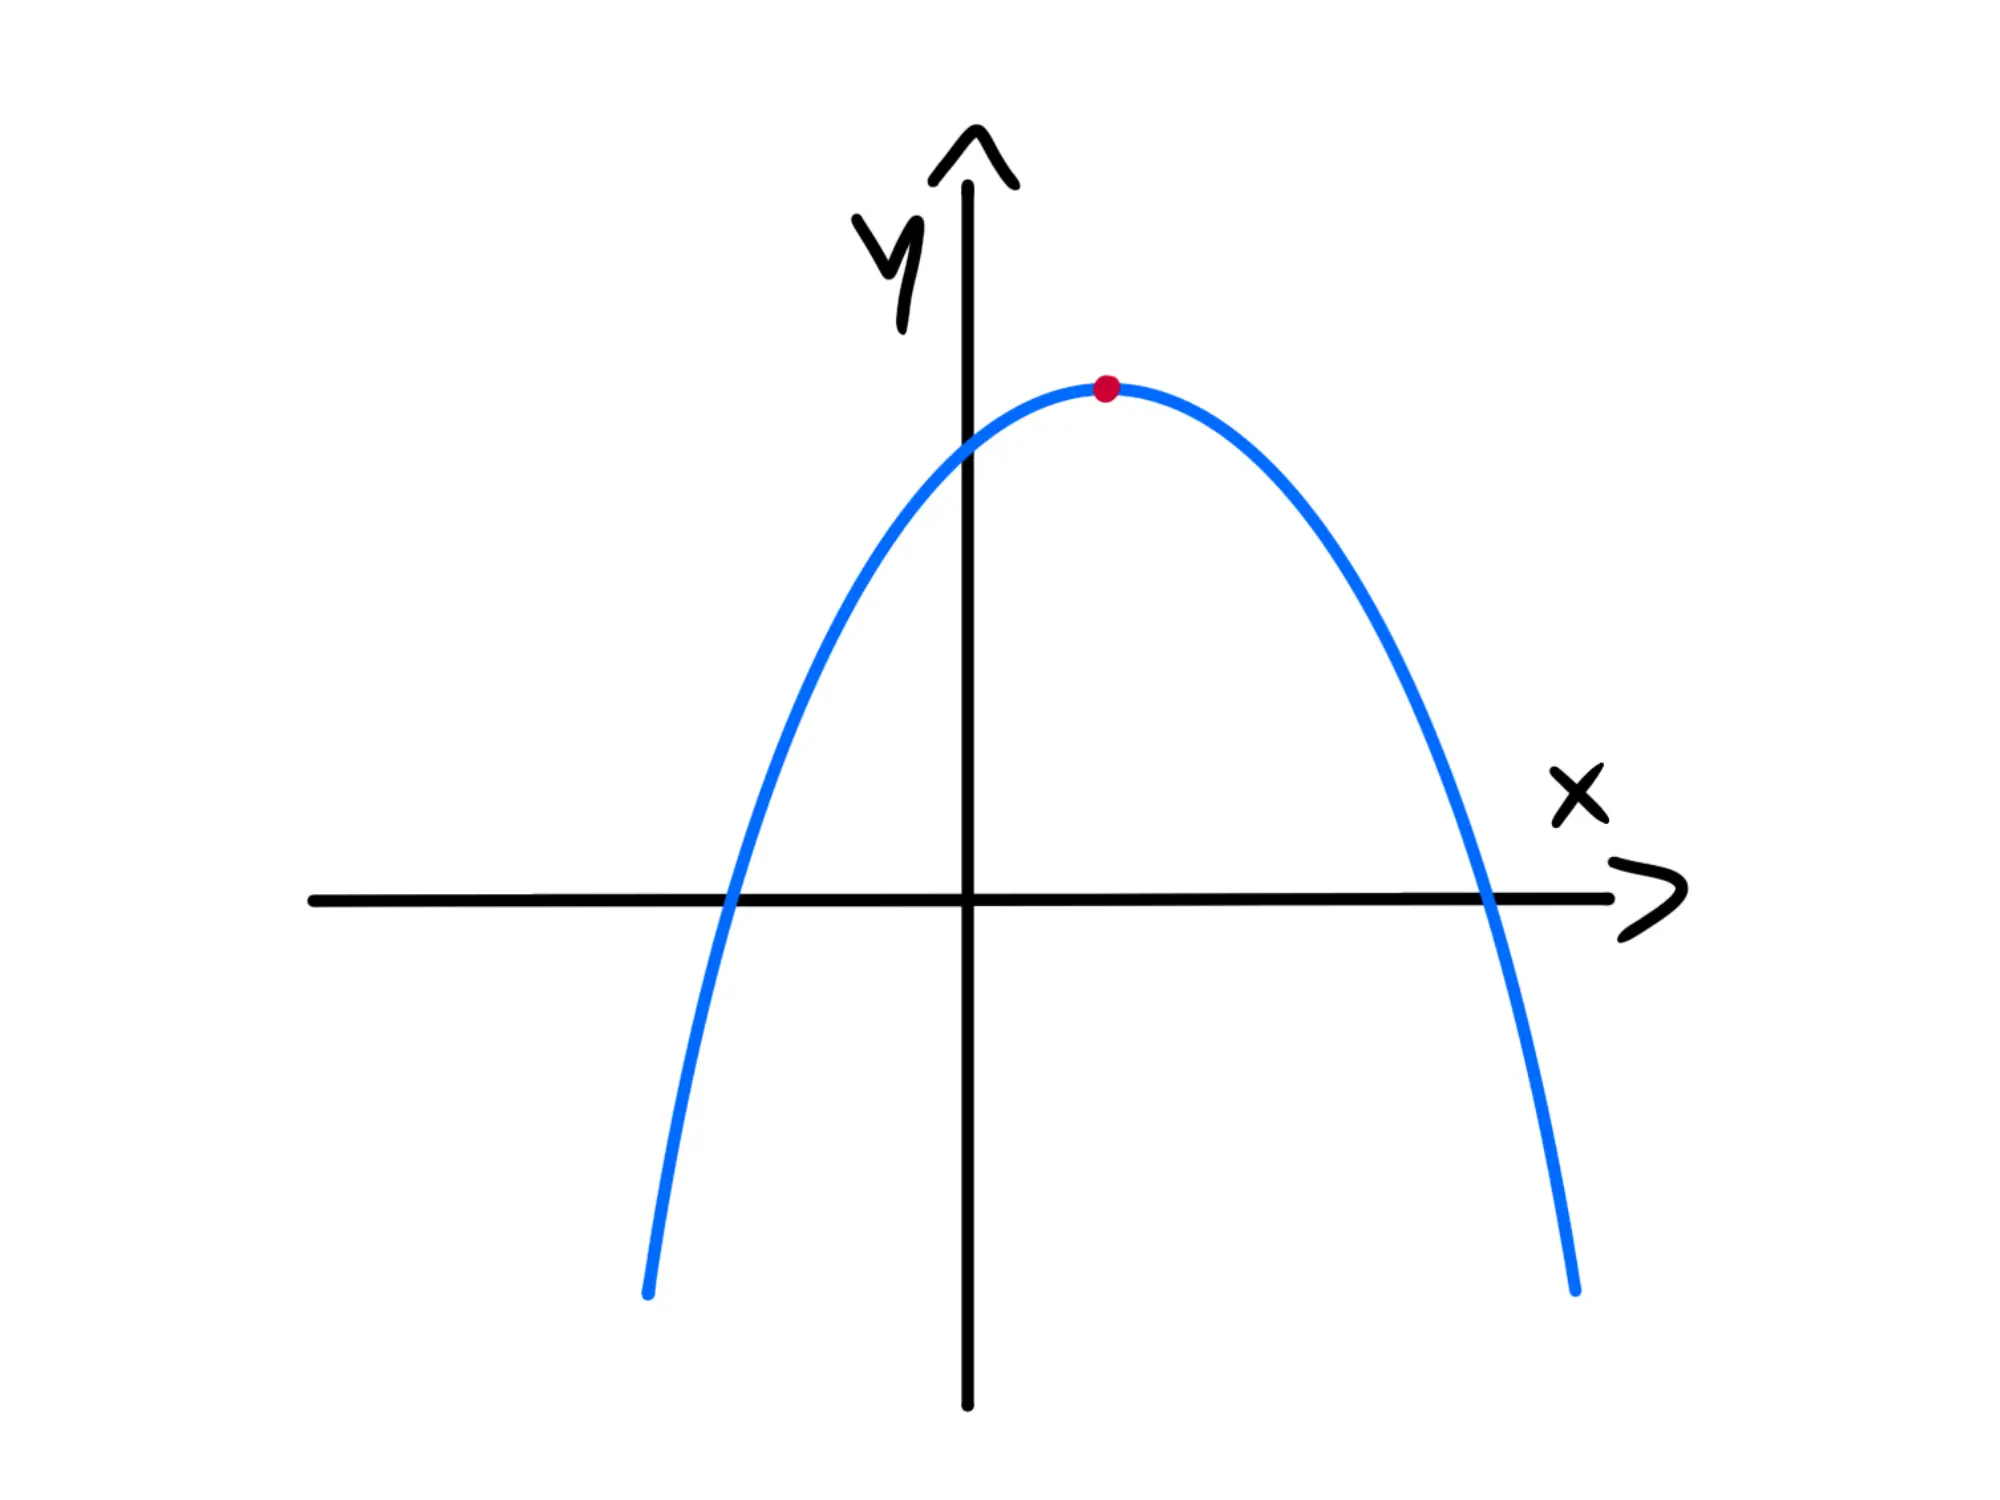 Esempio massimo assoluto. Disegna una parabola con concavità verso il basso ed evidenzia il vertice